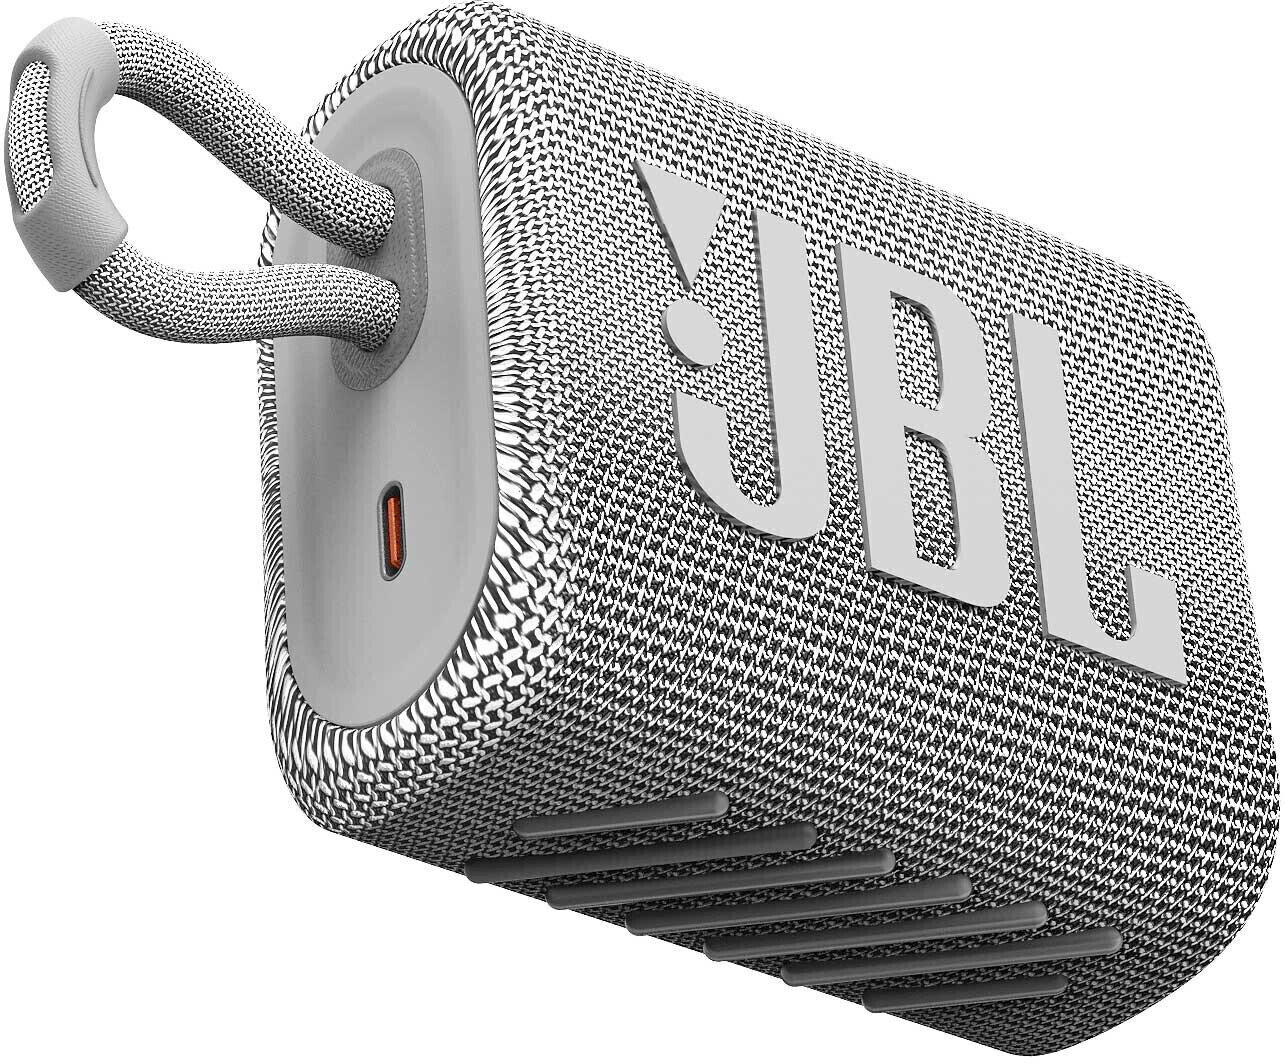 přenosný reproduktor JBL GO 3 White